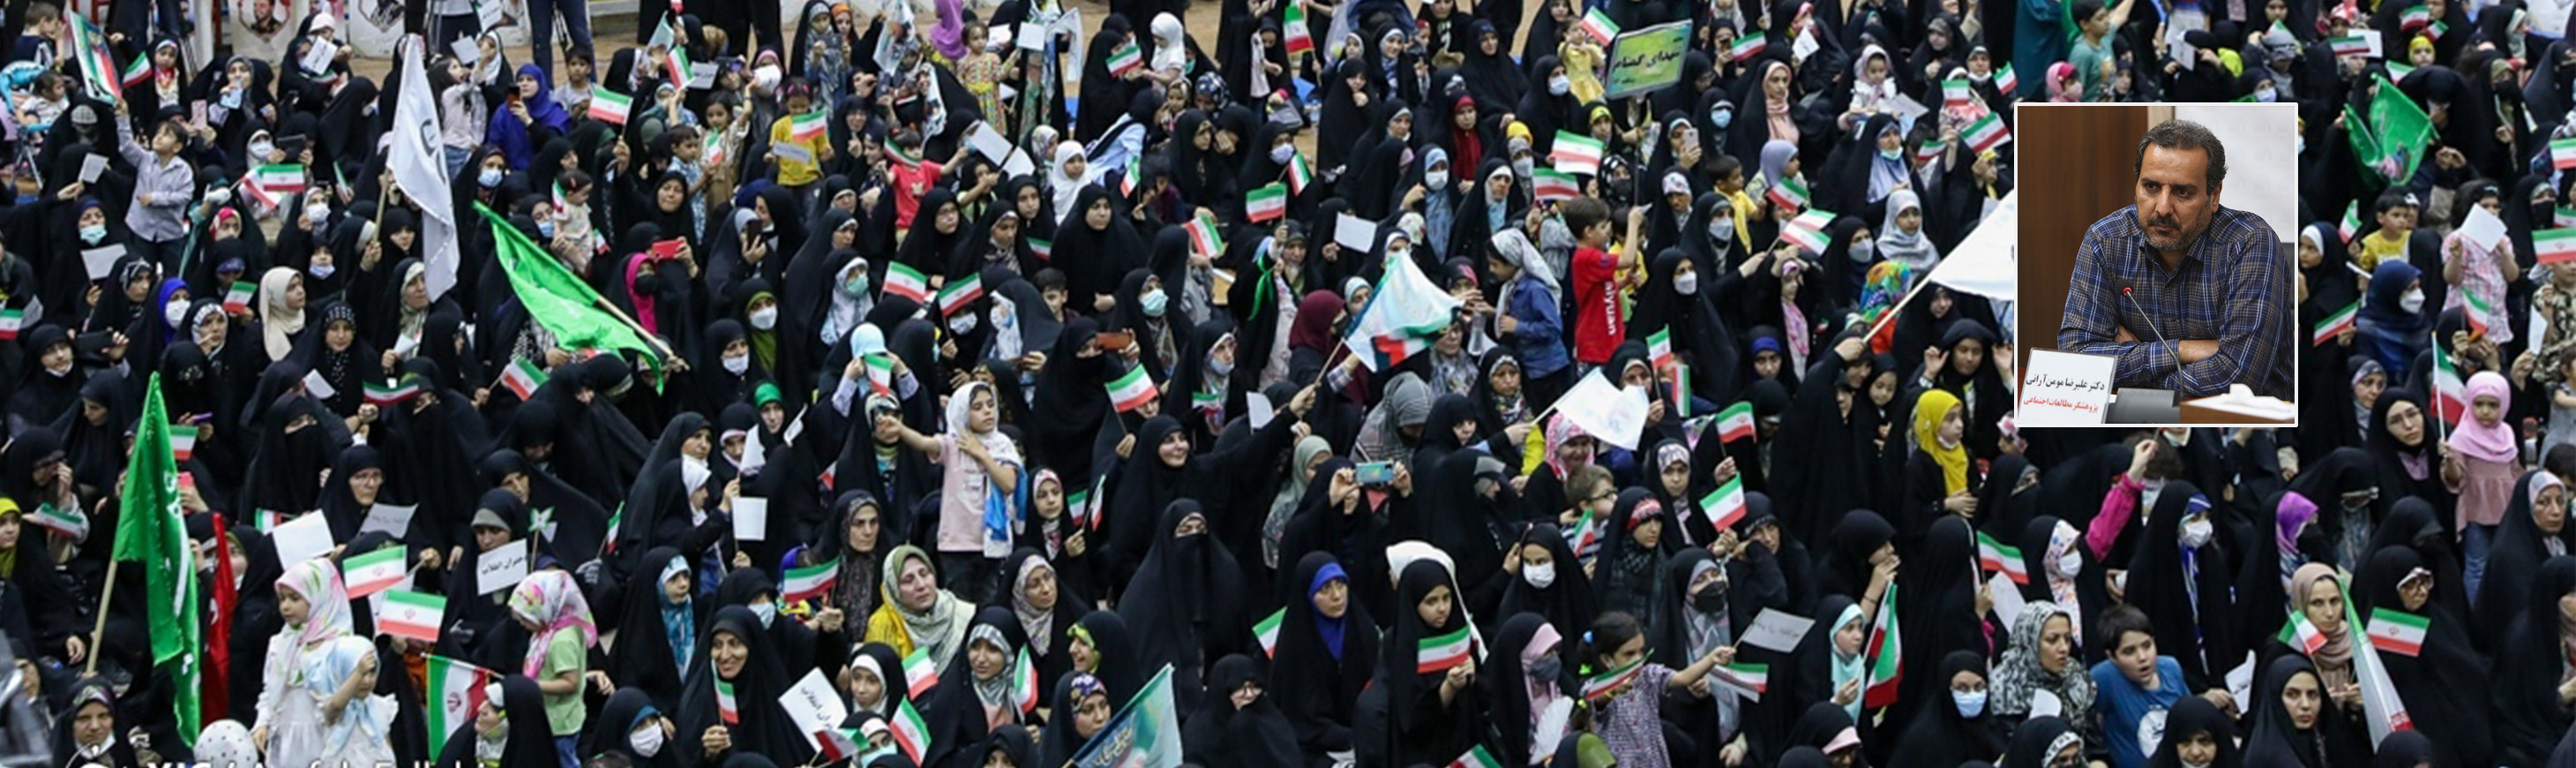 یادداشت | انقلاب اسلامی و مسئله زنان